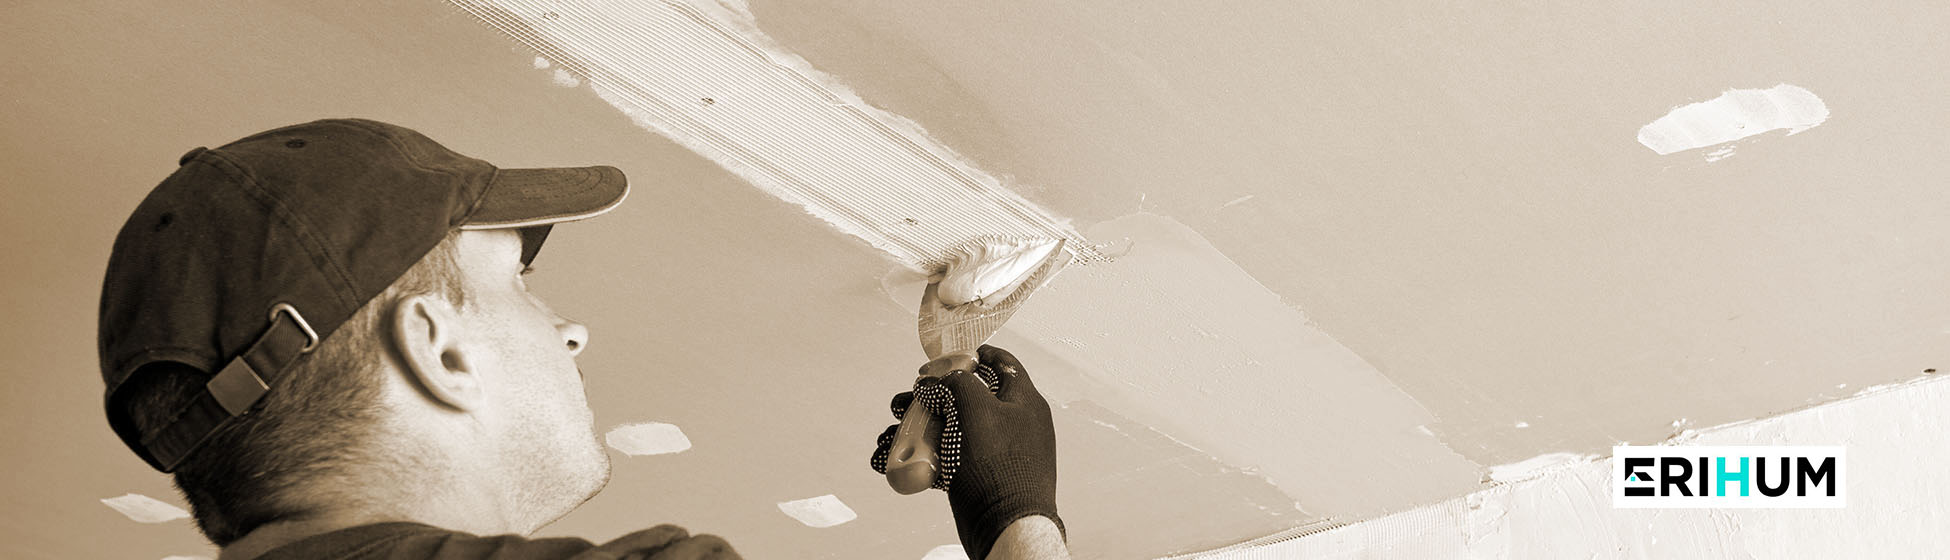 Poser bande placo plafond